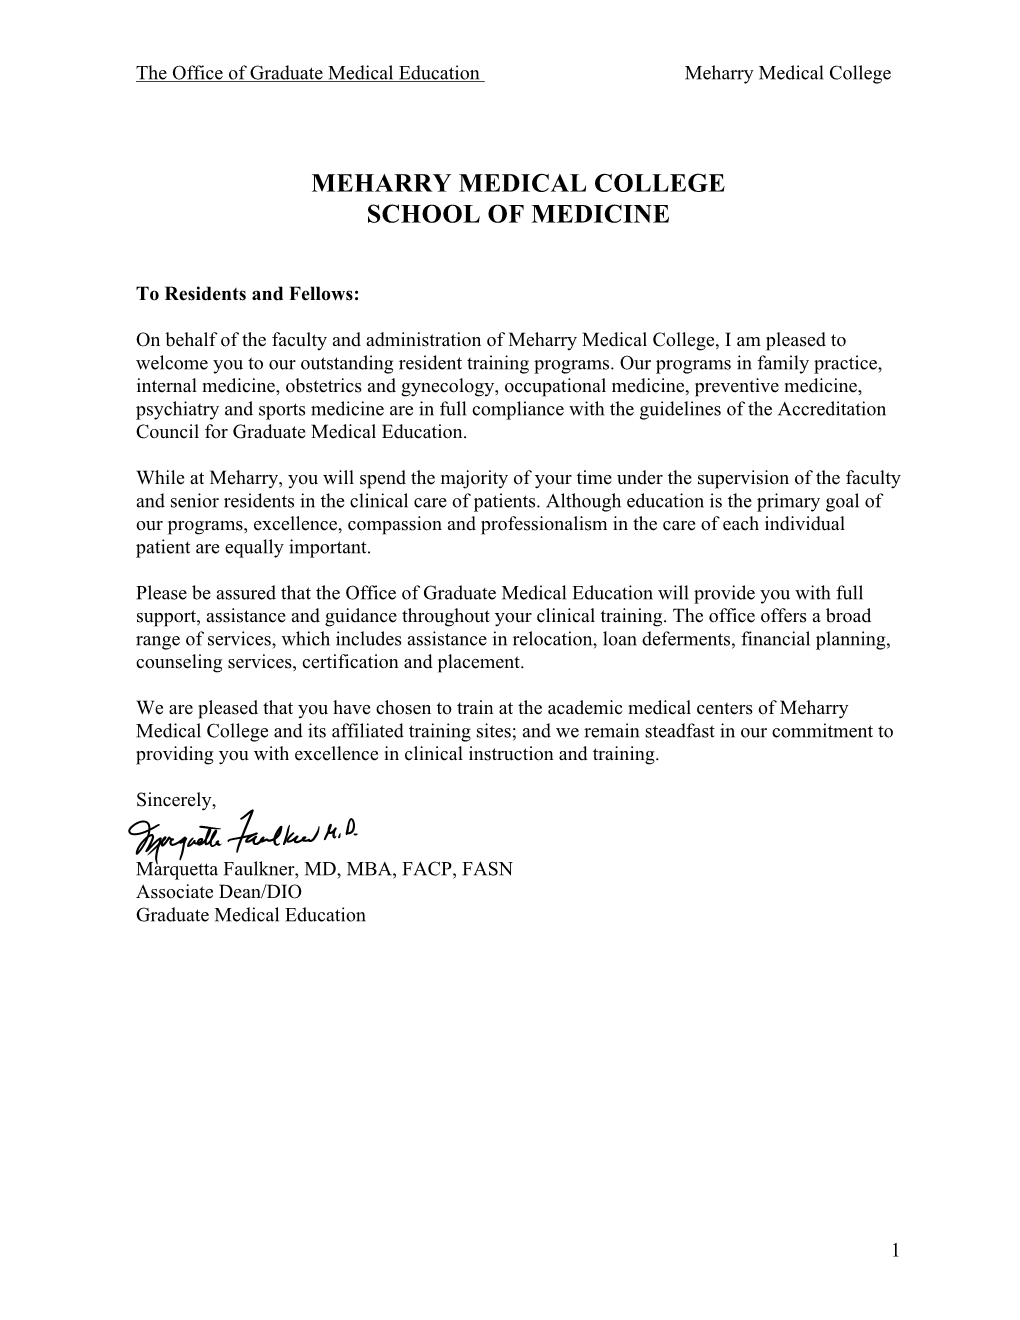 Meharry Medical College School of Medicine